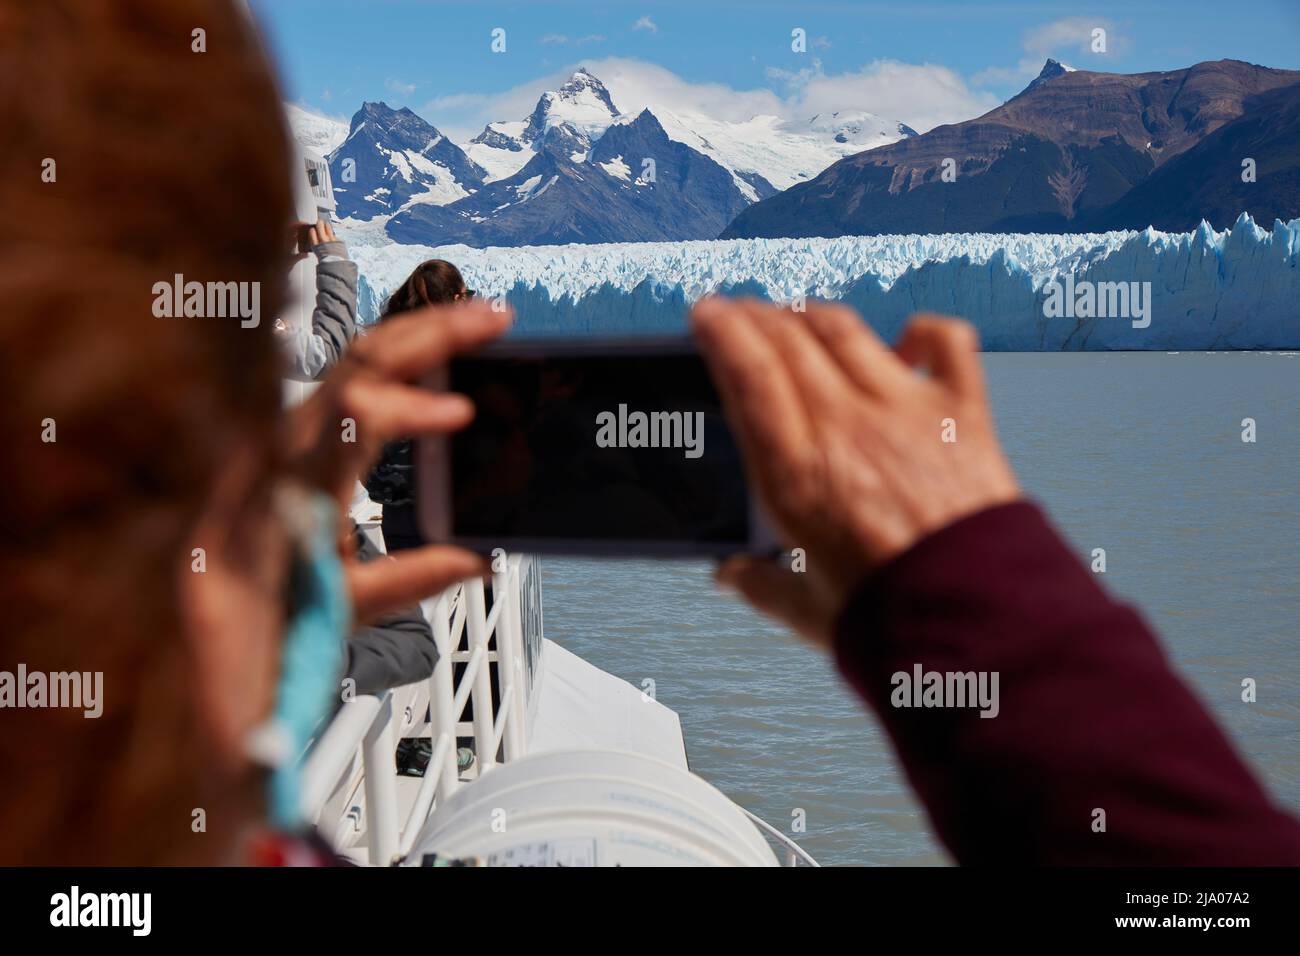 A tourist photographing the Perito Moreno glacier with a smartphone, El Calafate, Santa Cruz, Argentina. Stock Photo